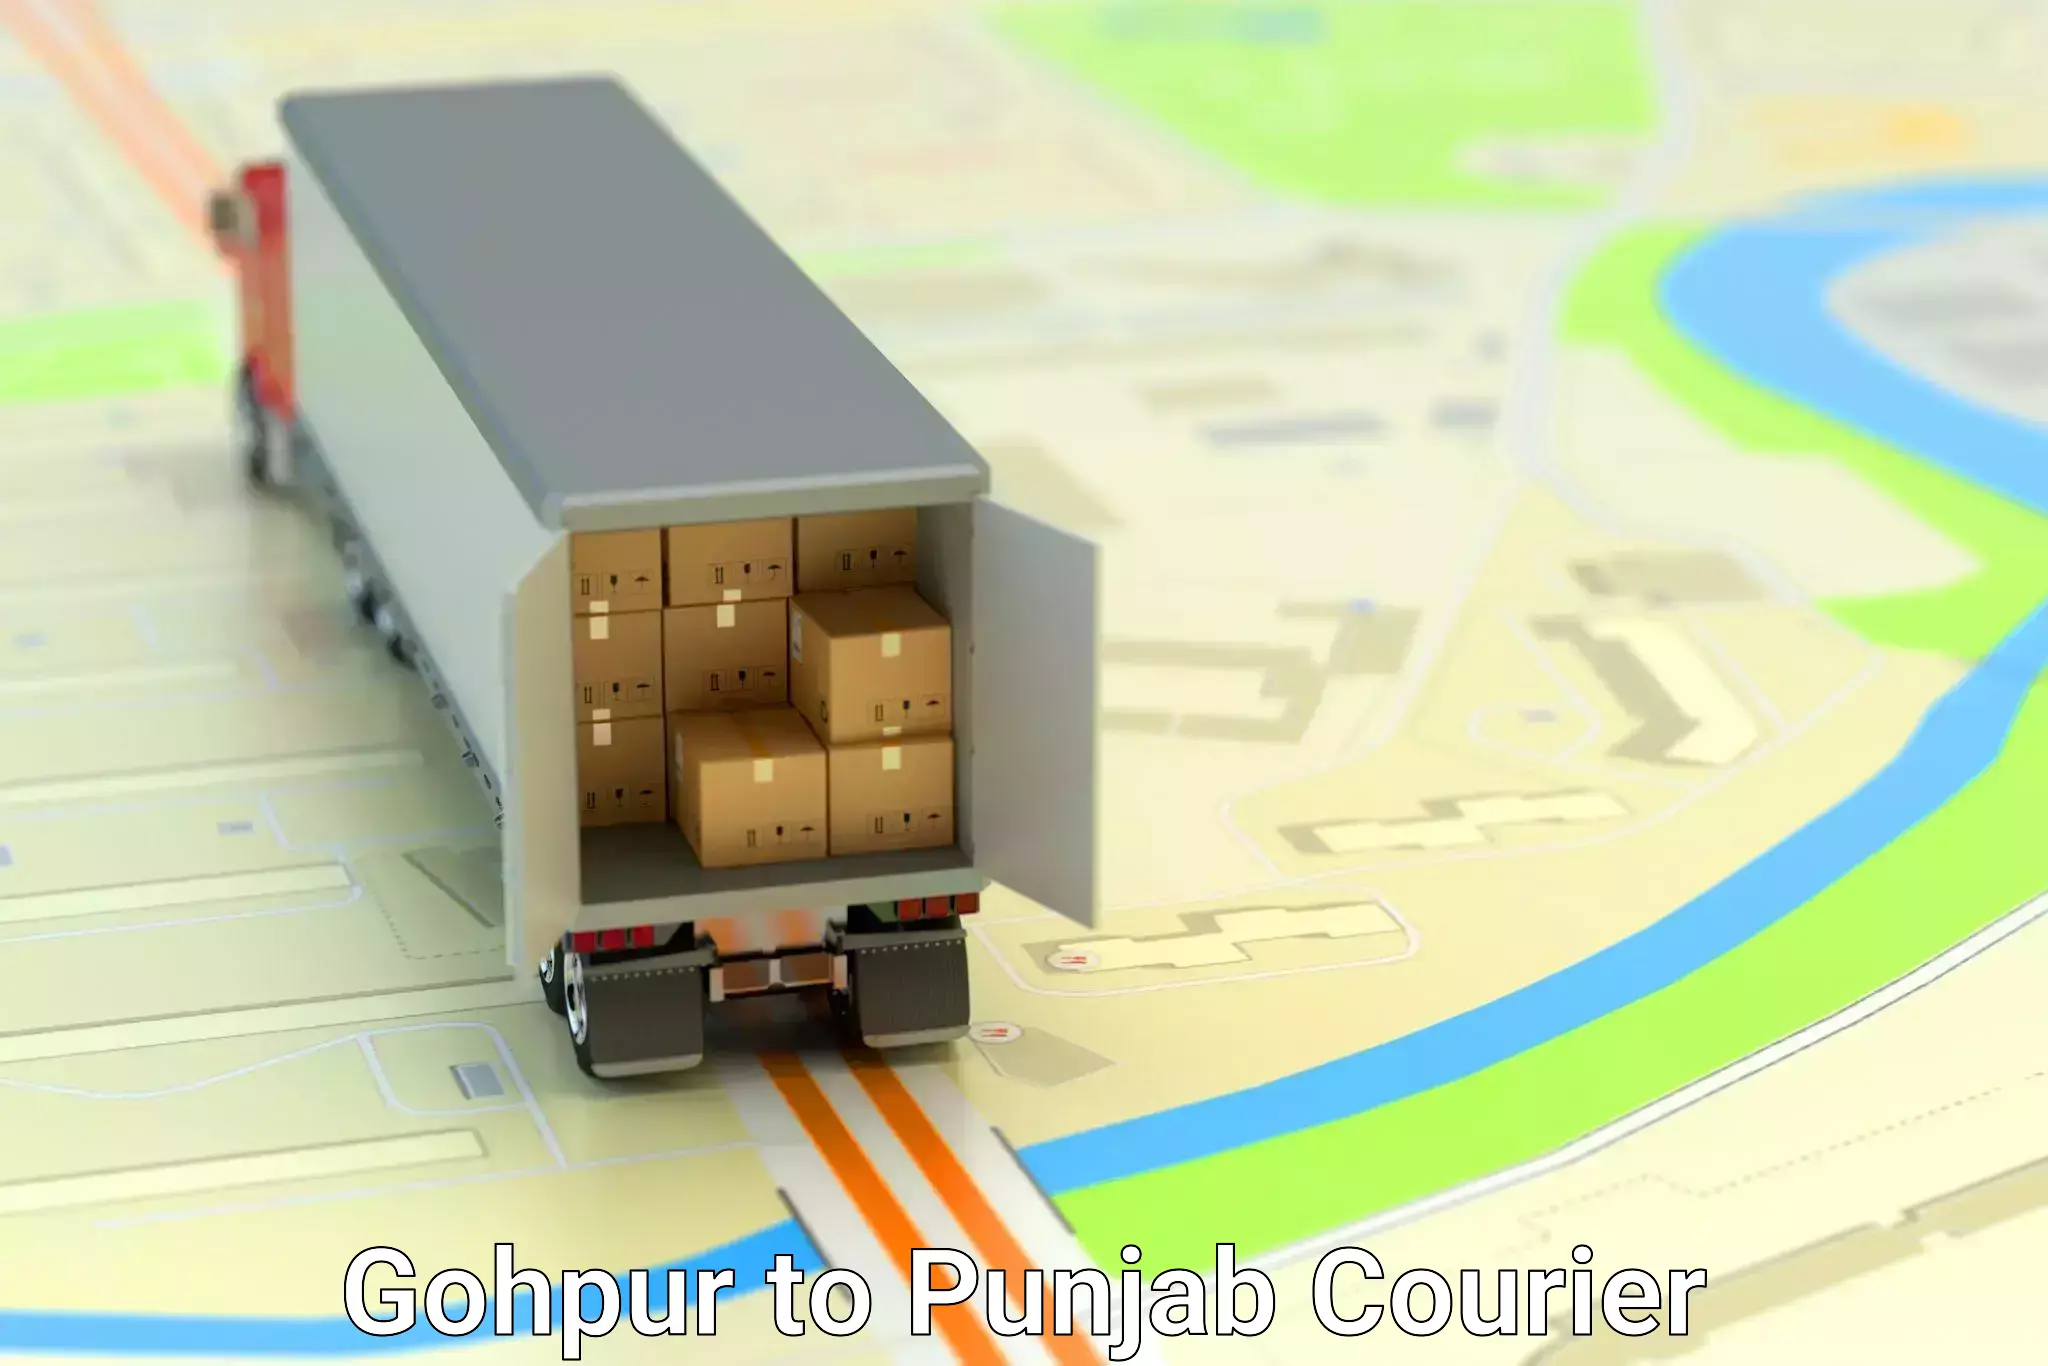 Courier service comparison Gohpur to Nangal